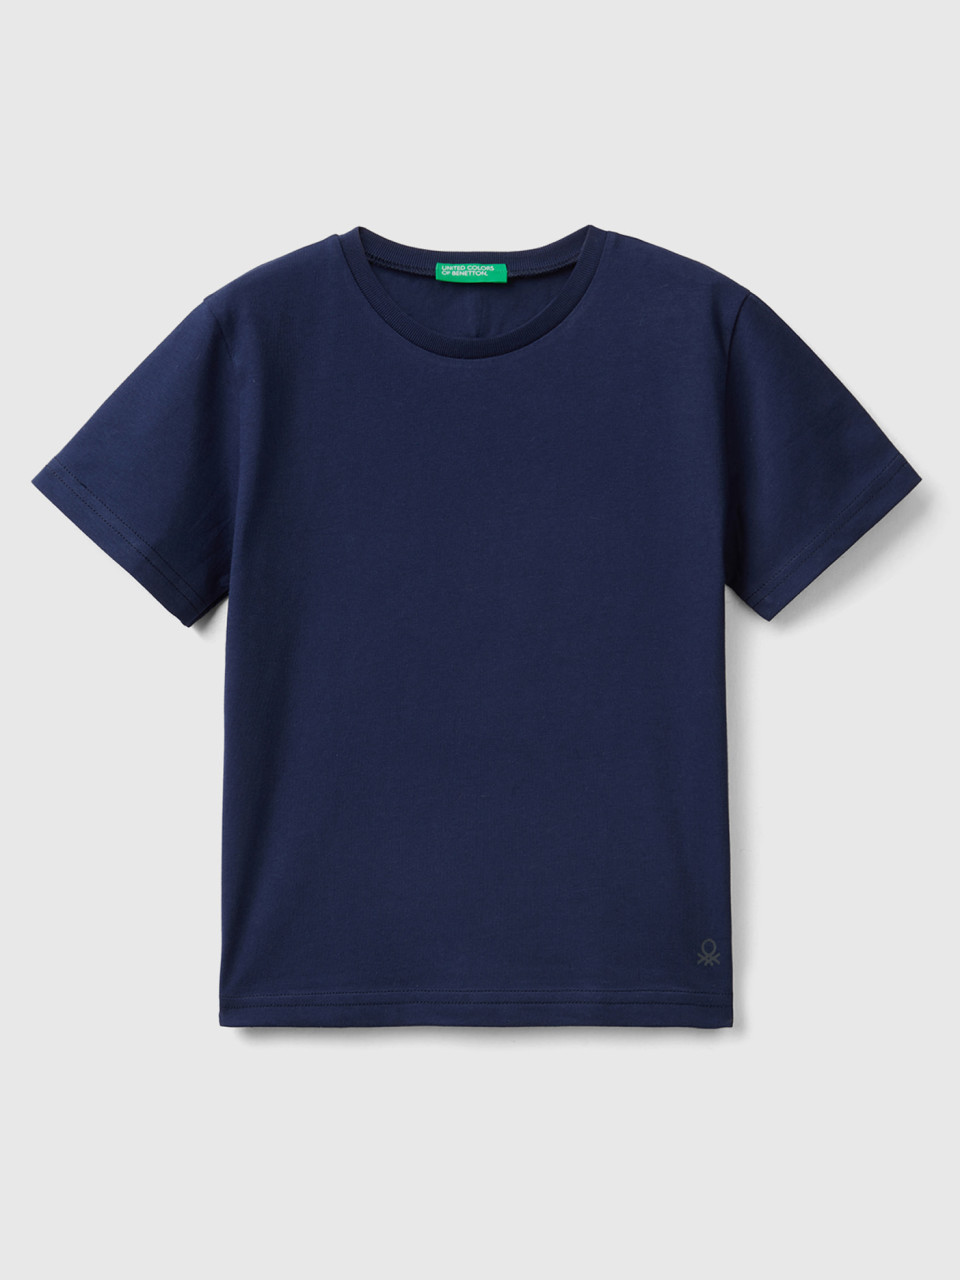 Benetton, Camiseta De Algodón Orgánico, Azul Oscuro, Niños